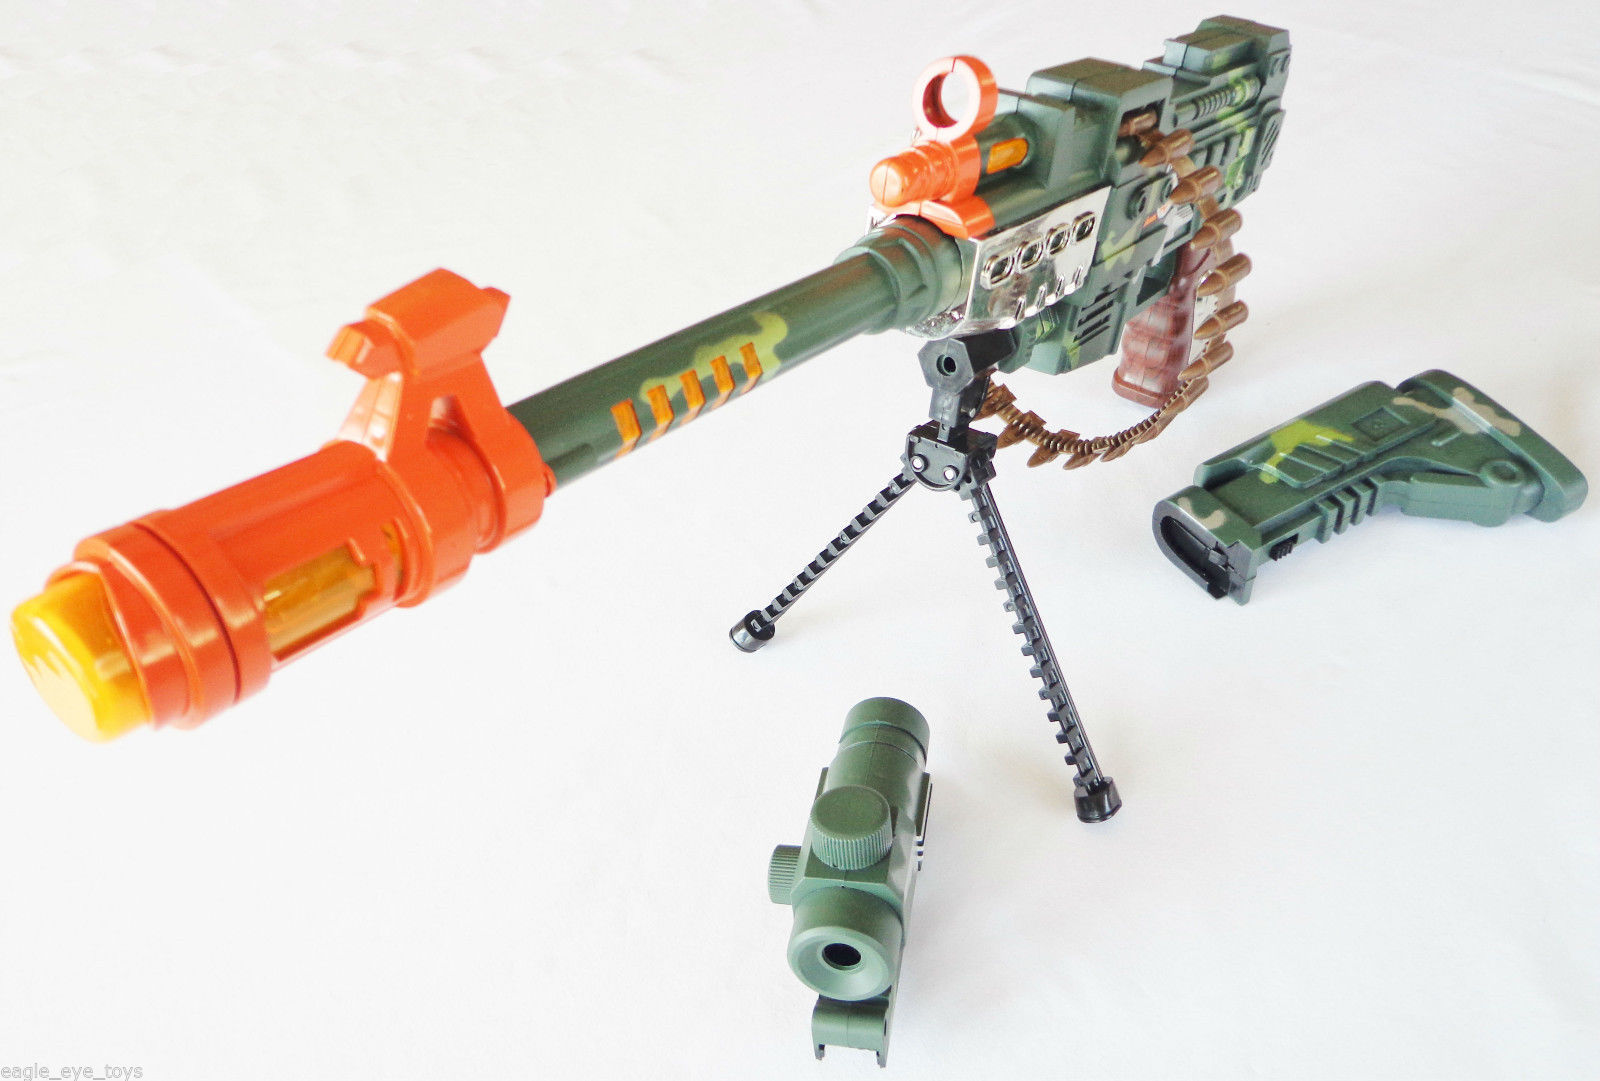 2x Toy Guns Toy LMG Machine Gun w/ Scope & Gold 9MM Pistol Cap Gun,...